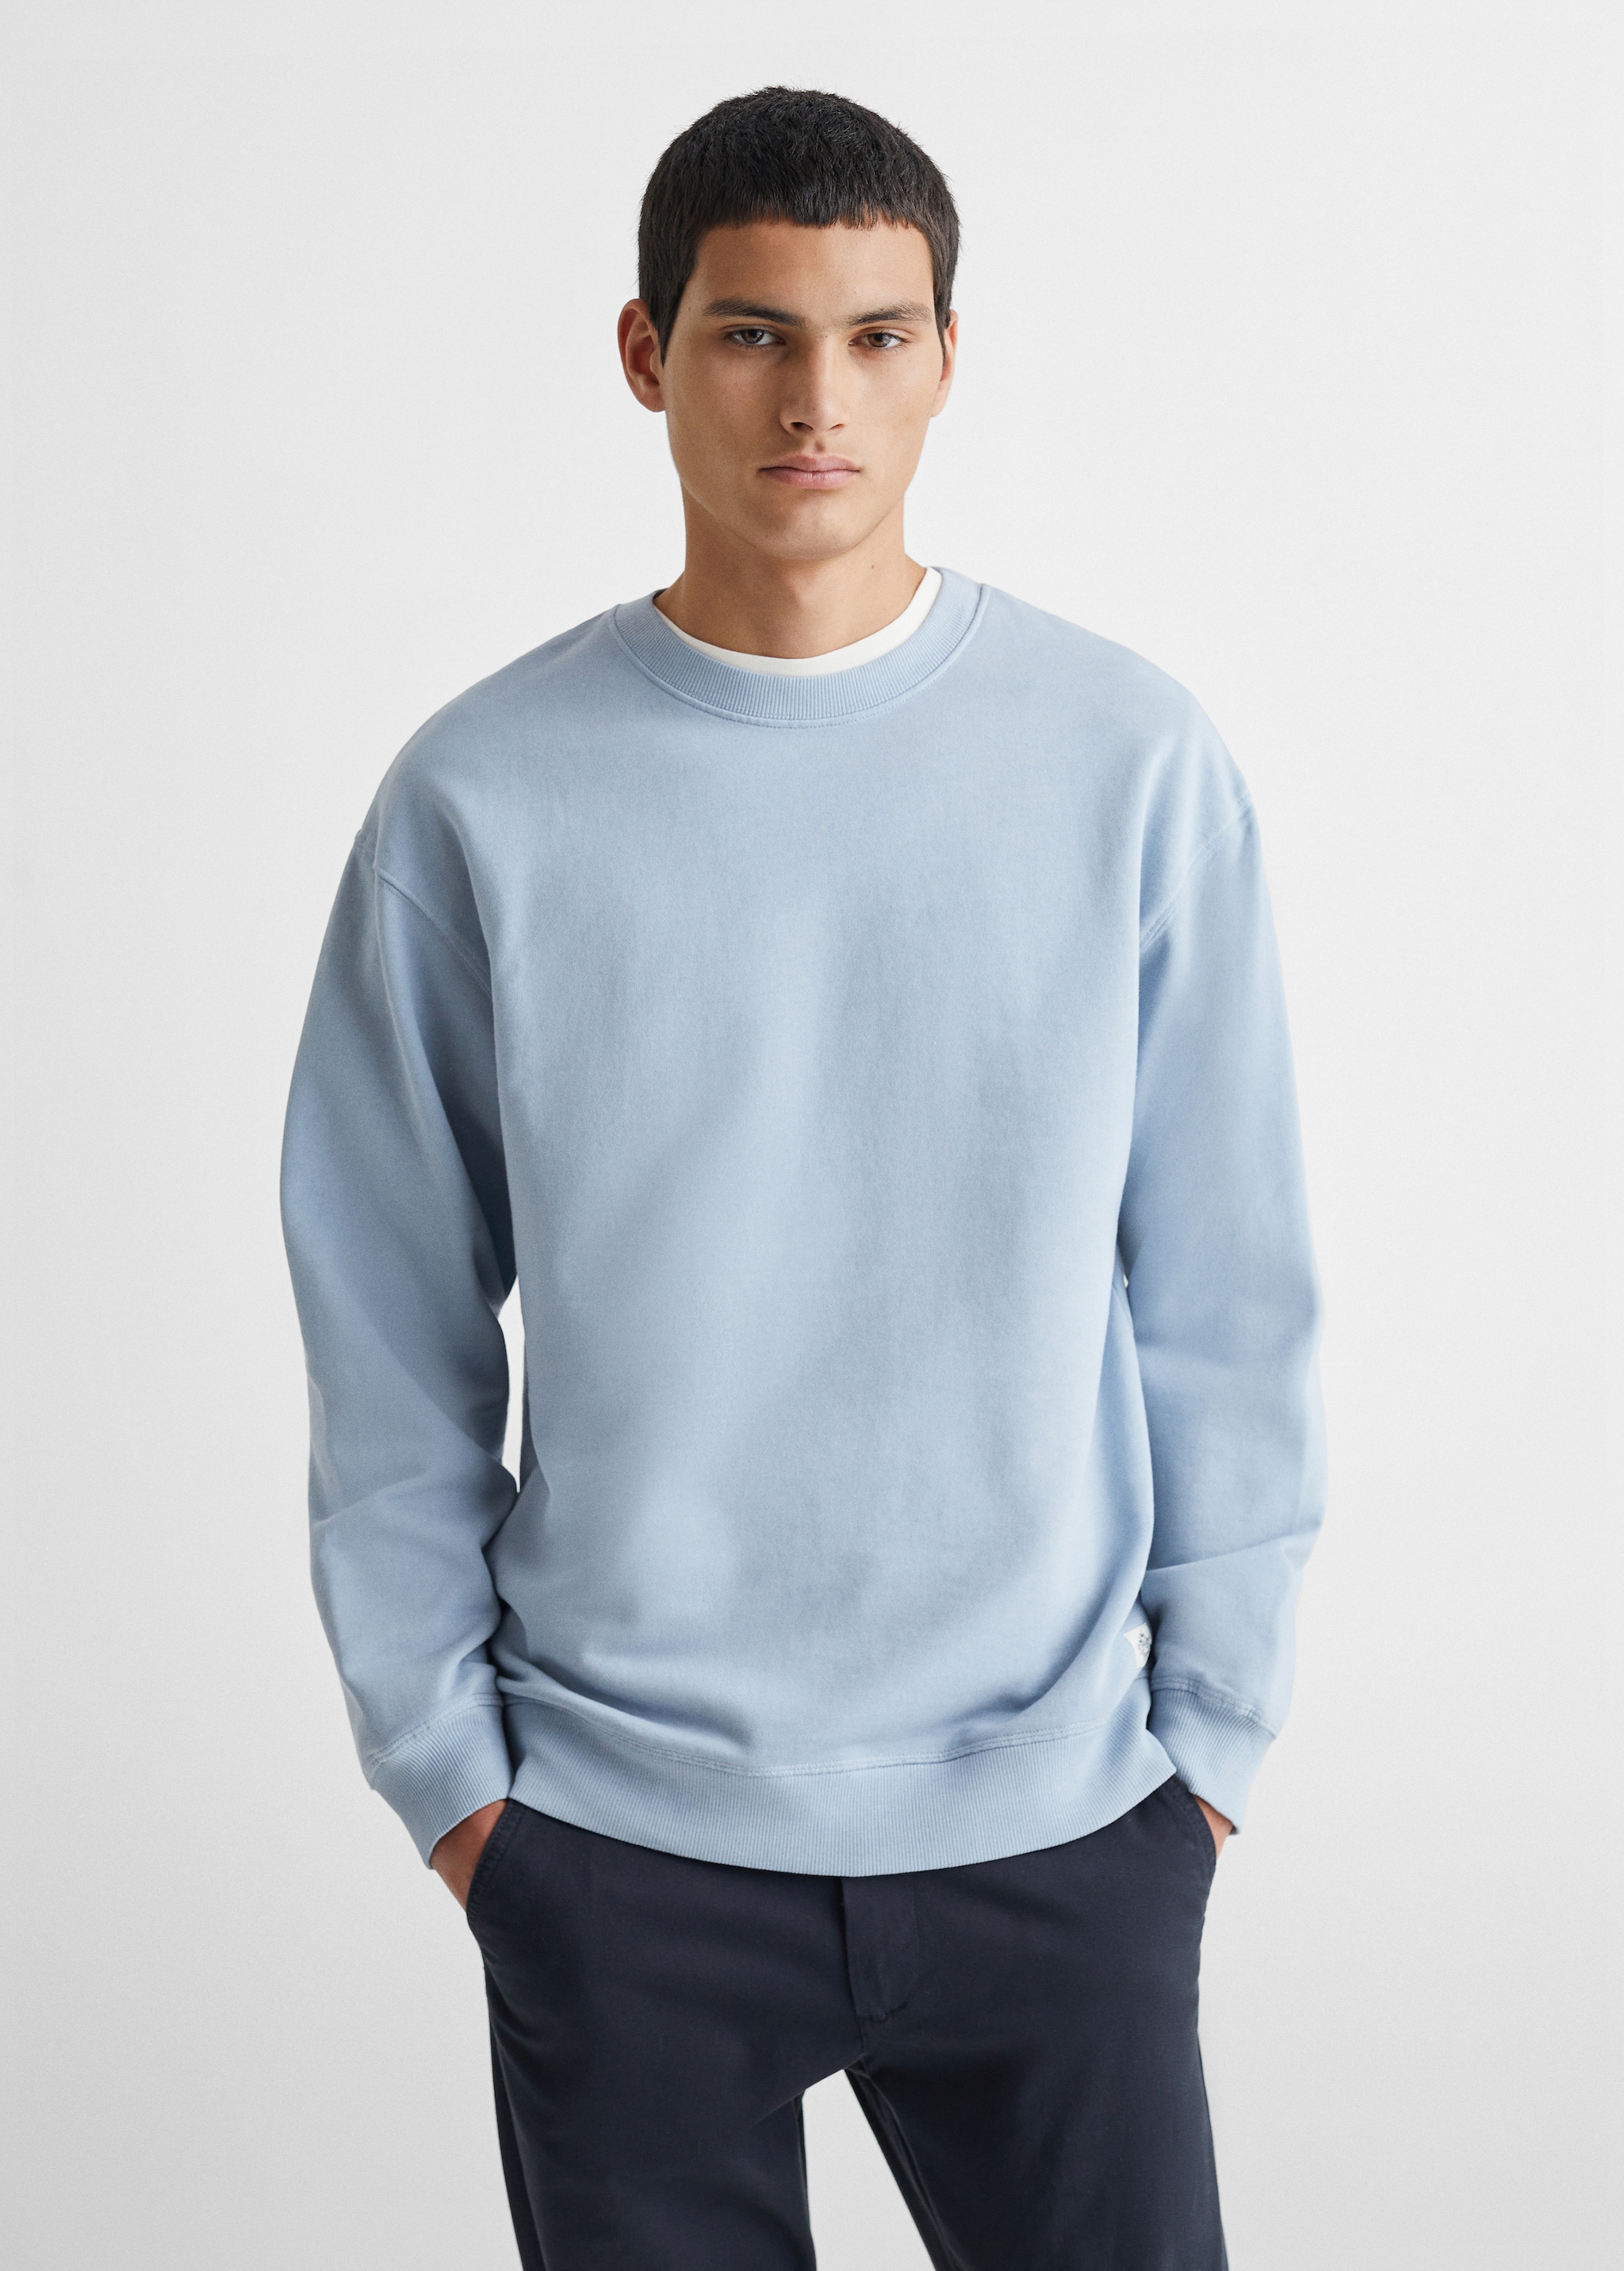 Sweater coton - Plan moyen